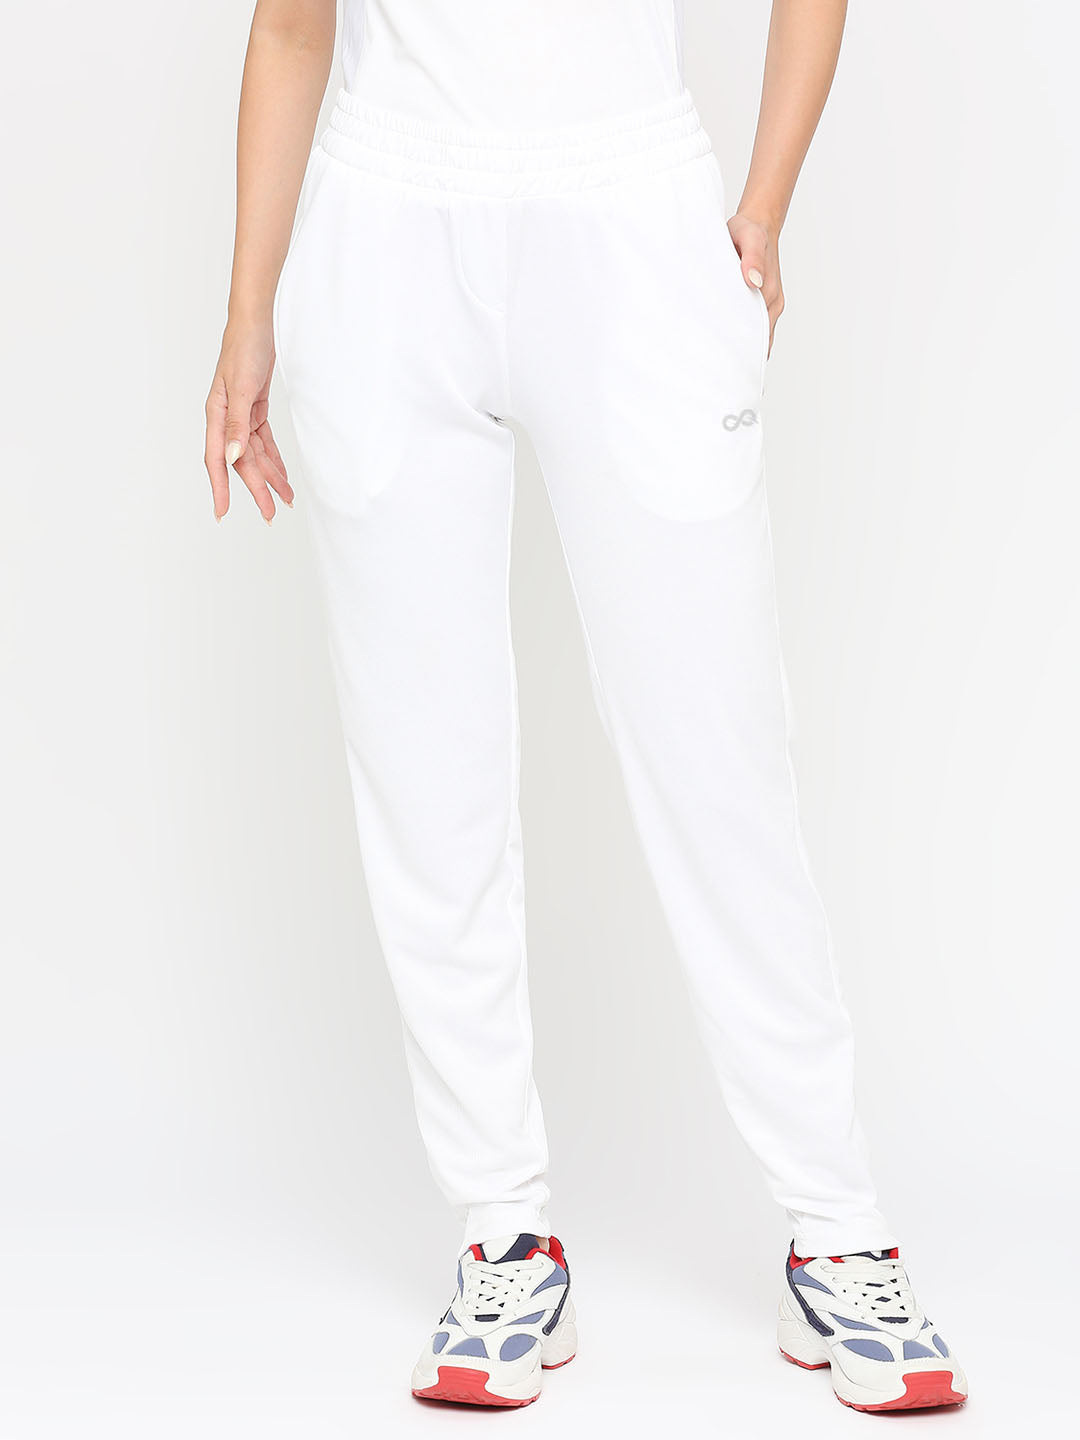 Buy Men White Print Slim Fit Casual Track Pants Online - 721896 | Van Heusen